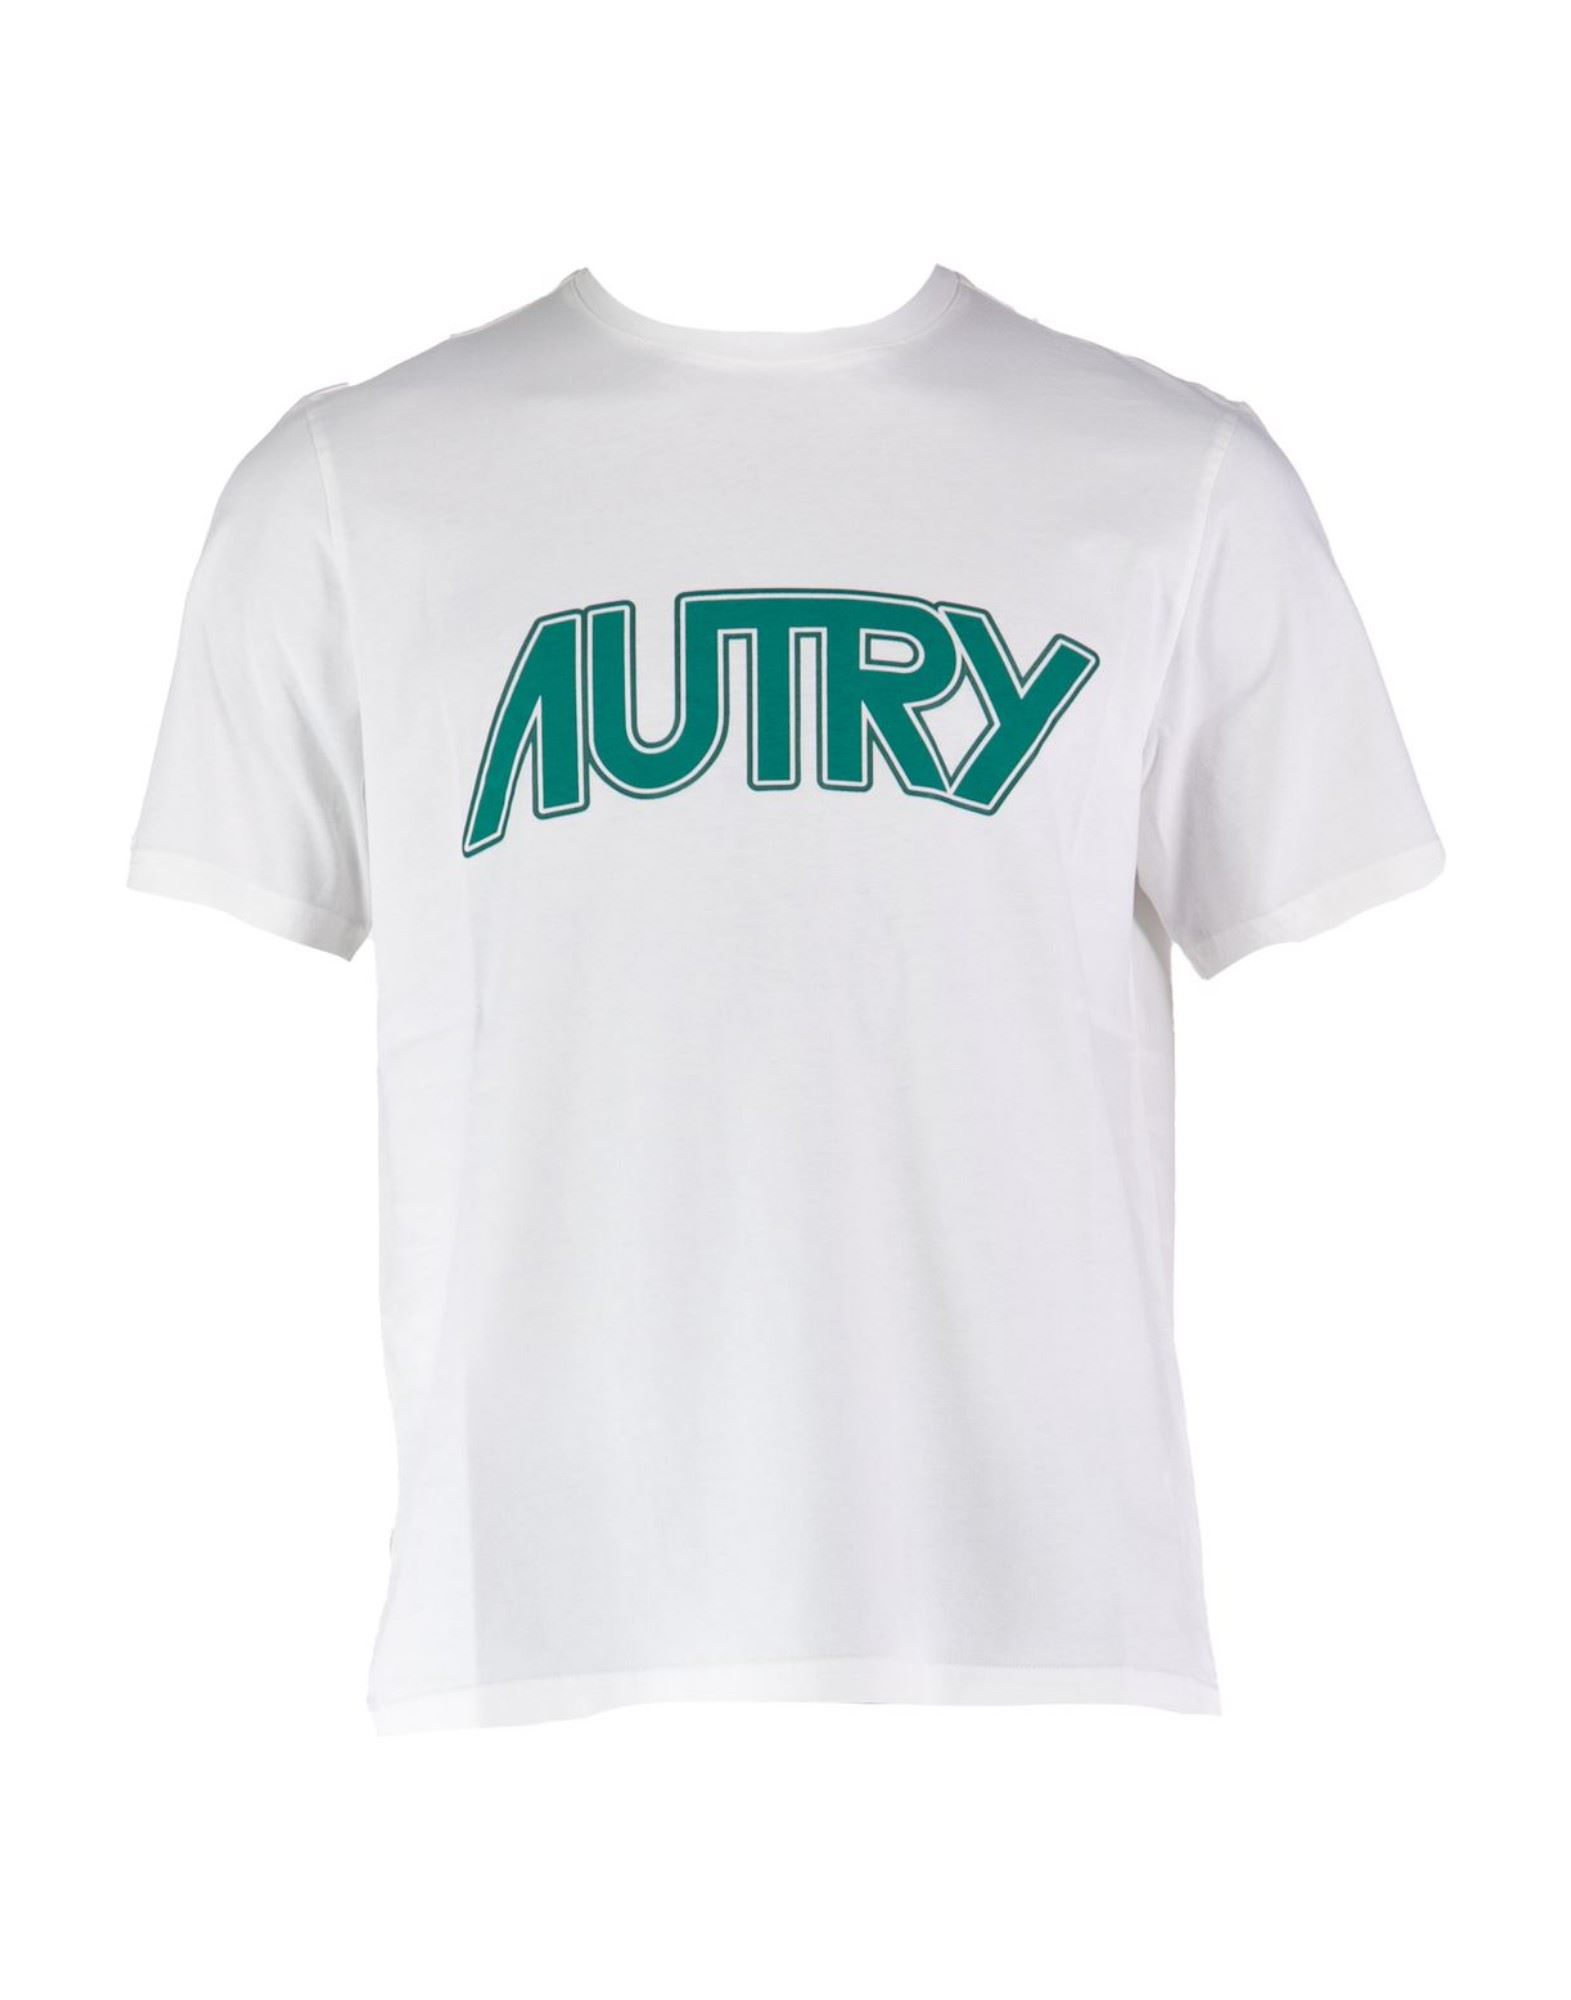 AUTRY T-shirts Herren Weiß von AUTRY